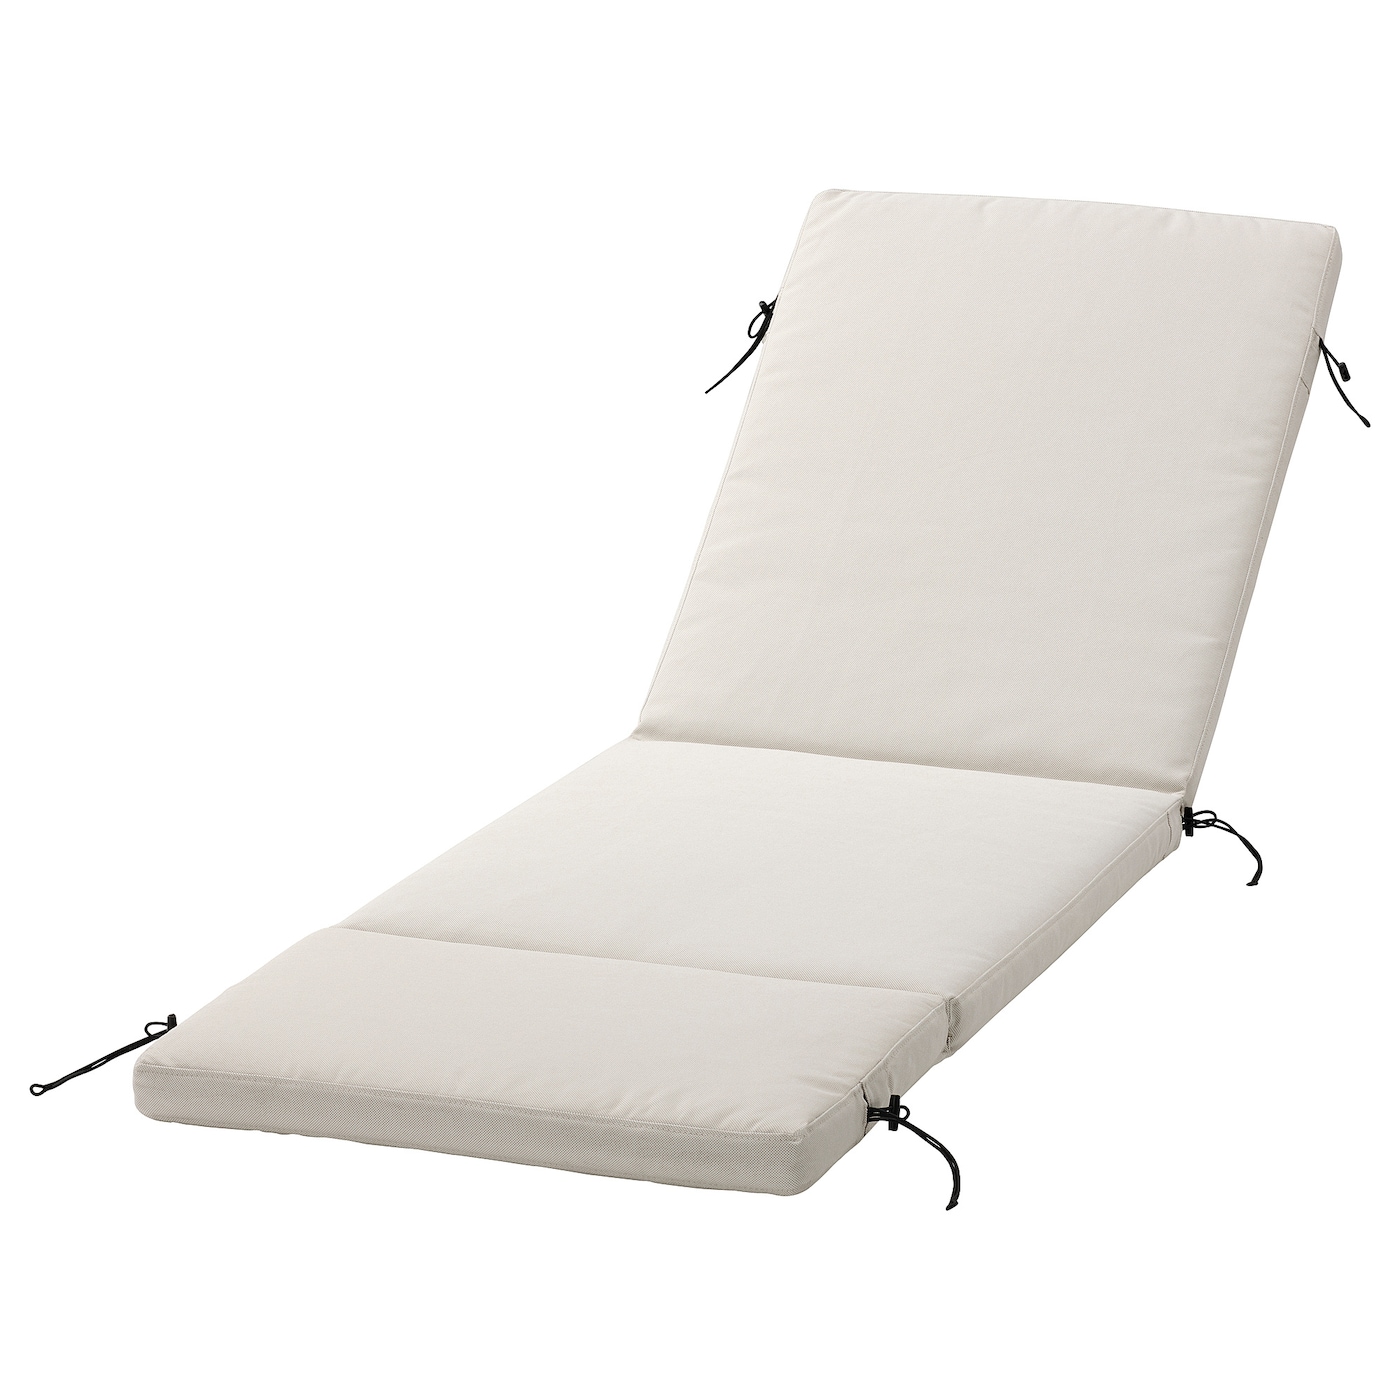 Чехол на подушку сиденья/спинки - FRÖSÖN / FRОSОN  IKEA/ ФРЕСЕН ИКЕА,  190х60 см, белый